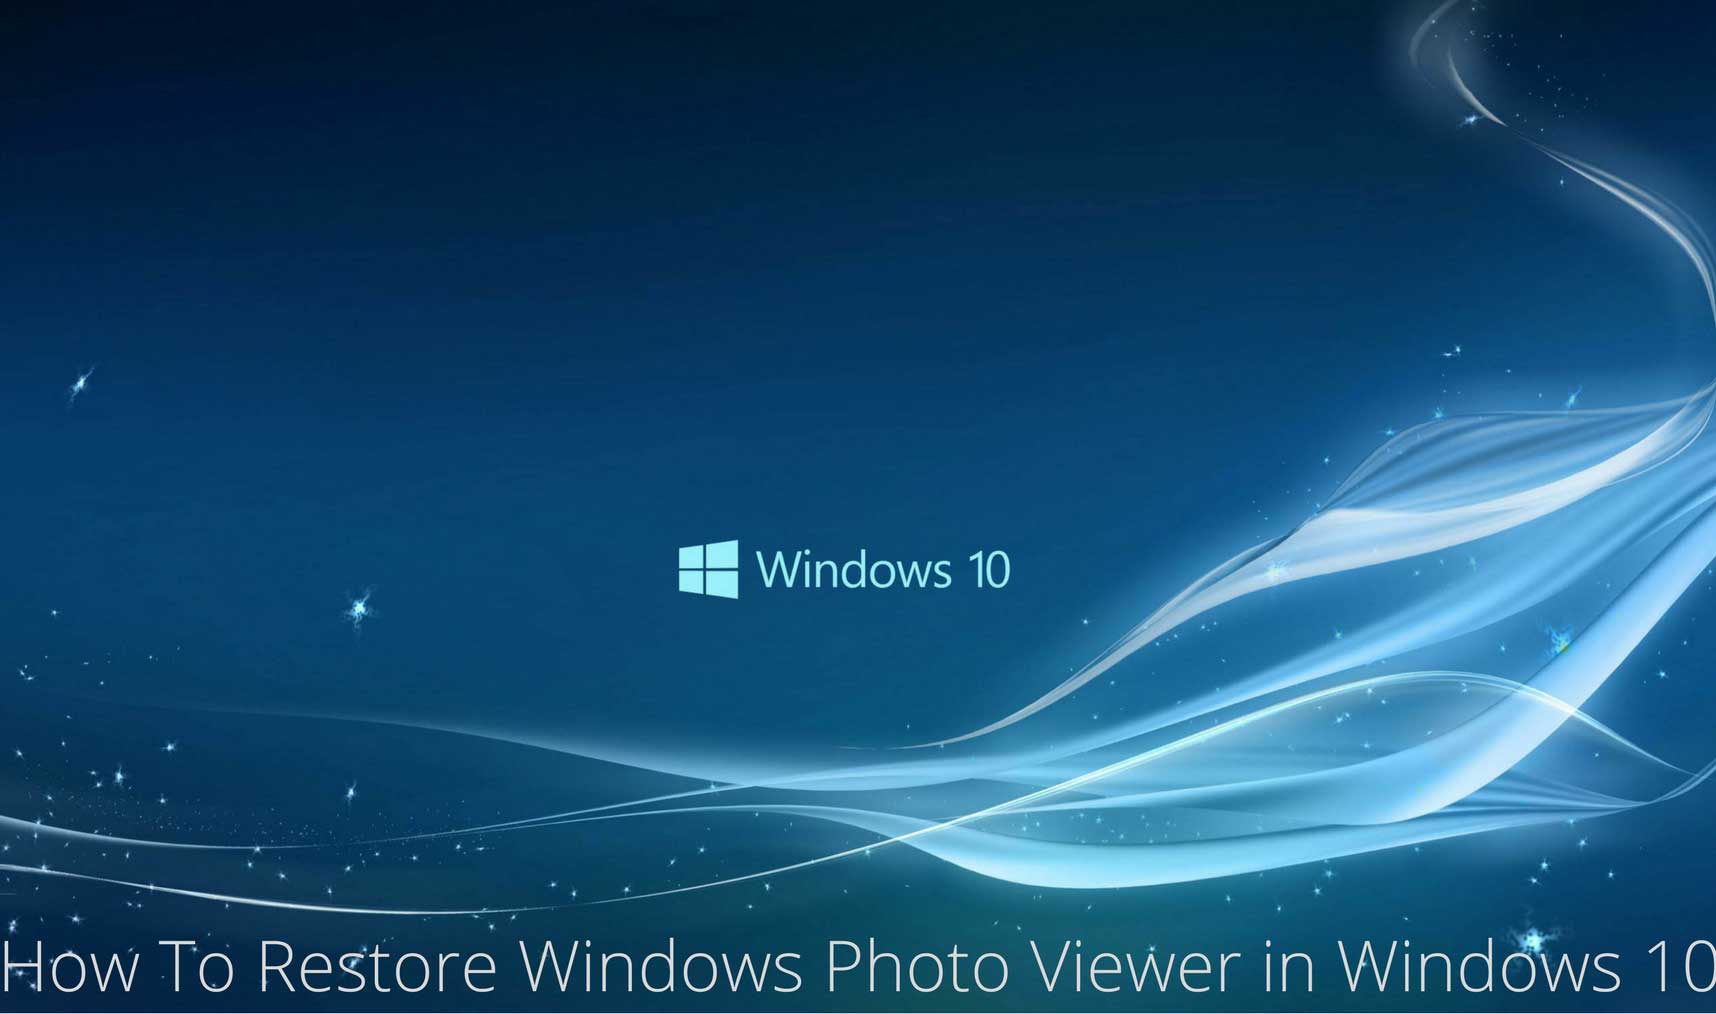 Trình xem ảnh trên Windows 10: Bạn thường xem ảnh trên máy tính và đang cần một công cụ xem ảnh đa chức năng? Trình xem ảnh trên Windows 10 là lựa chọn tối ưu cho bạn. Bạn có thể đọc được hầu hết các định dạng ảnh thông dụng, tìm kiếm ảnh nhanh chóng và sắp xếp chúng theo cách bạn muốn.